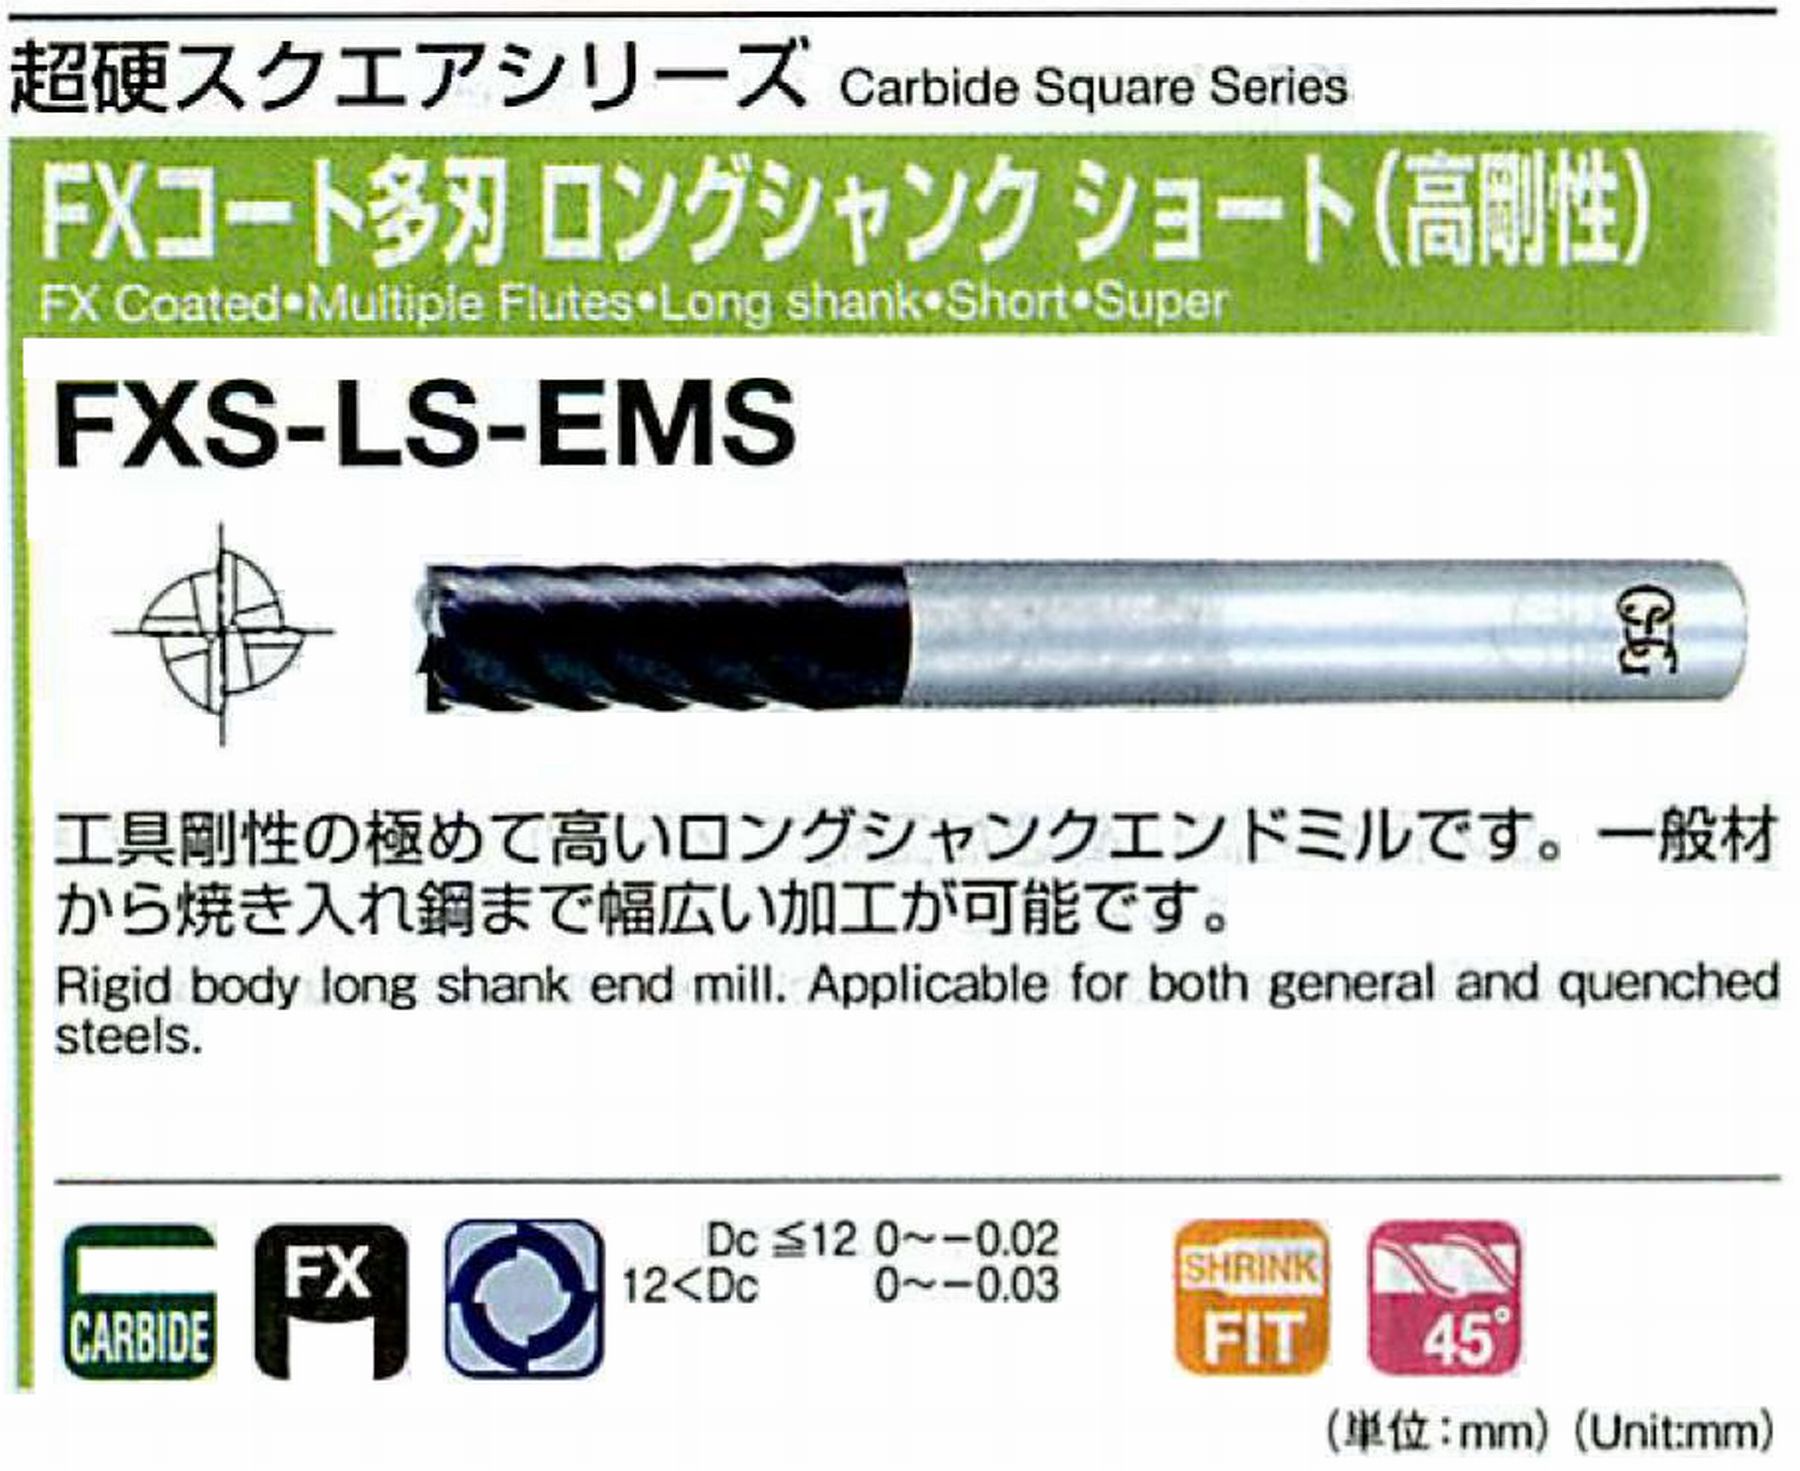 オーエスジー/OSG FXコート多刃 ロングシャンクショート(高剛性) FXS-LS-EMS 外径22 全長180 刃長45 シャンク径20mm 刃数6